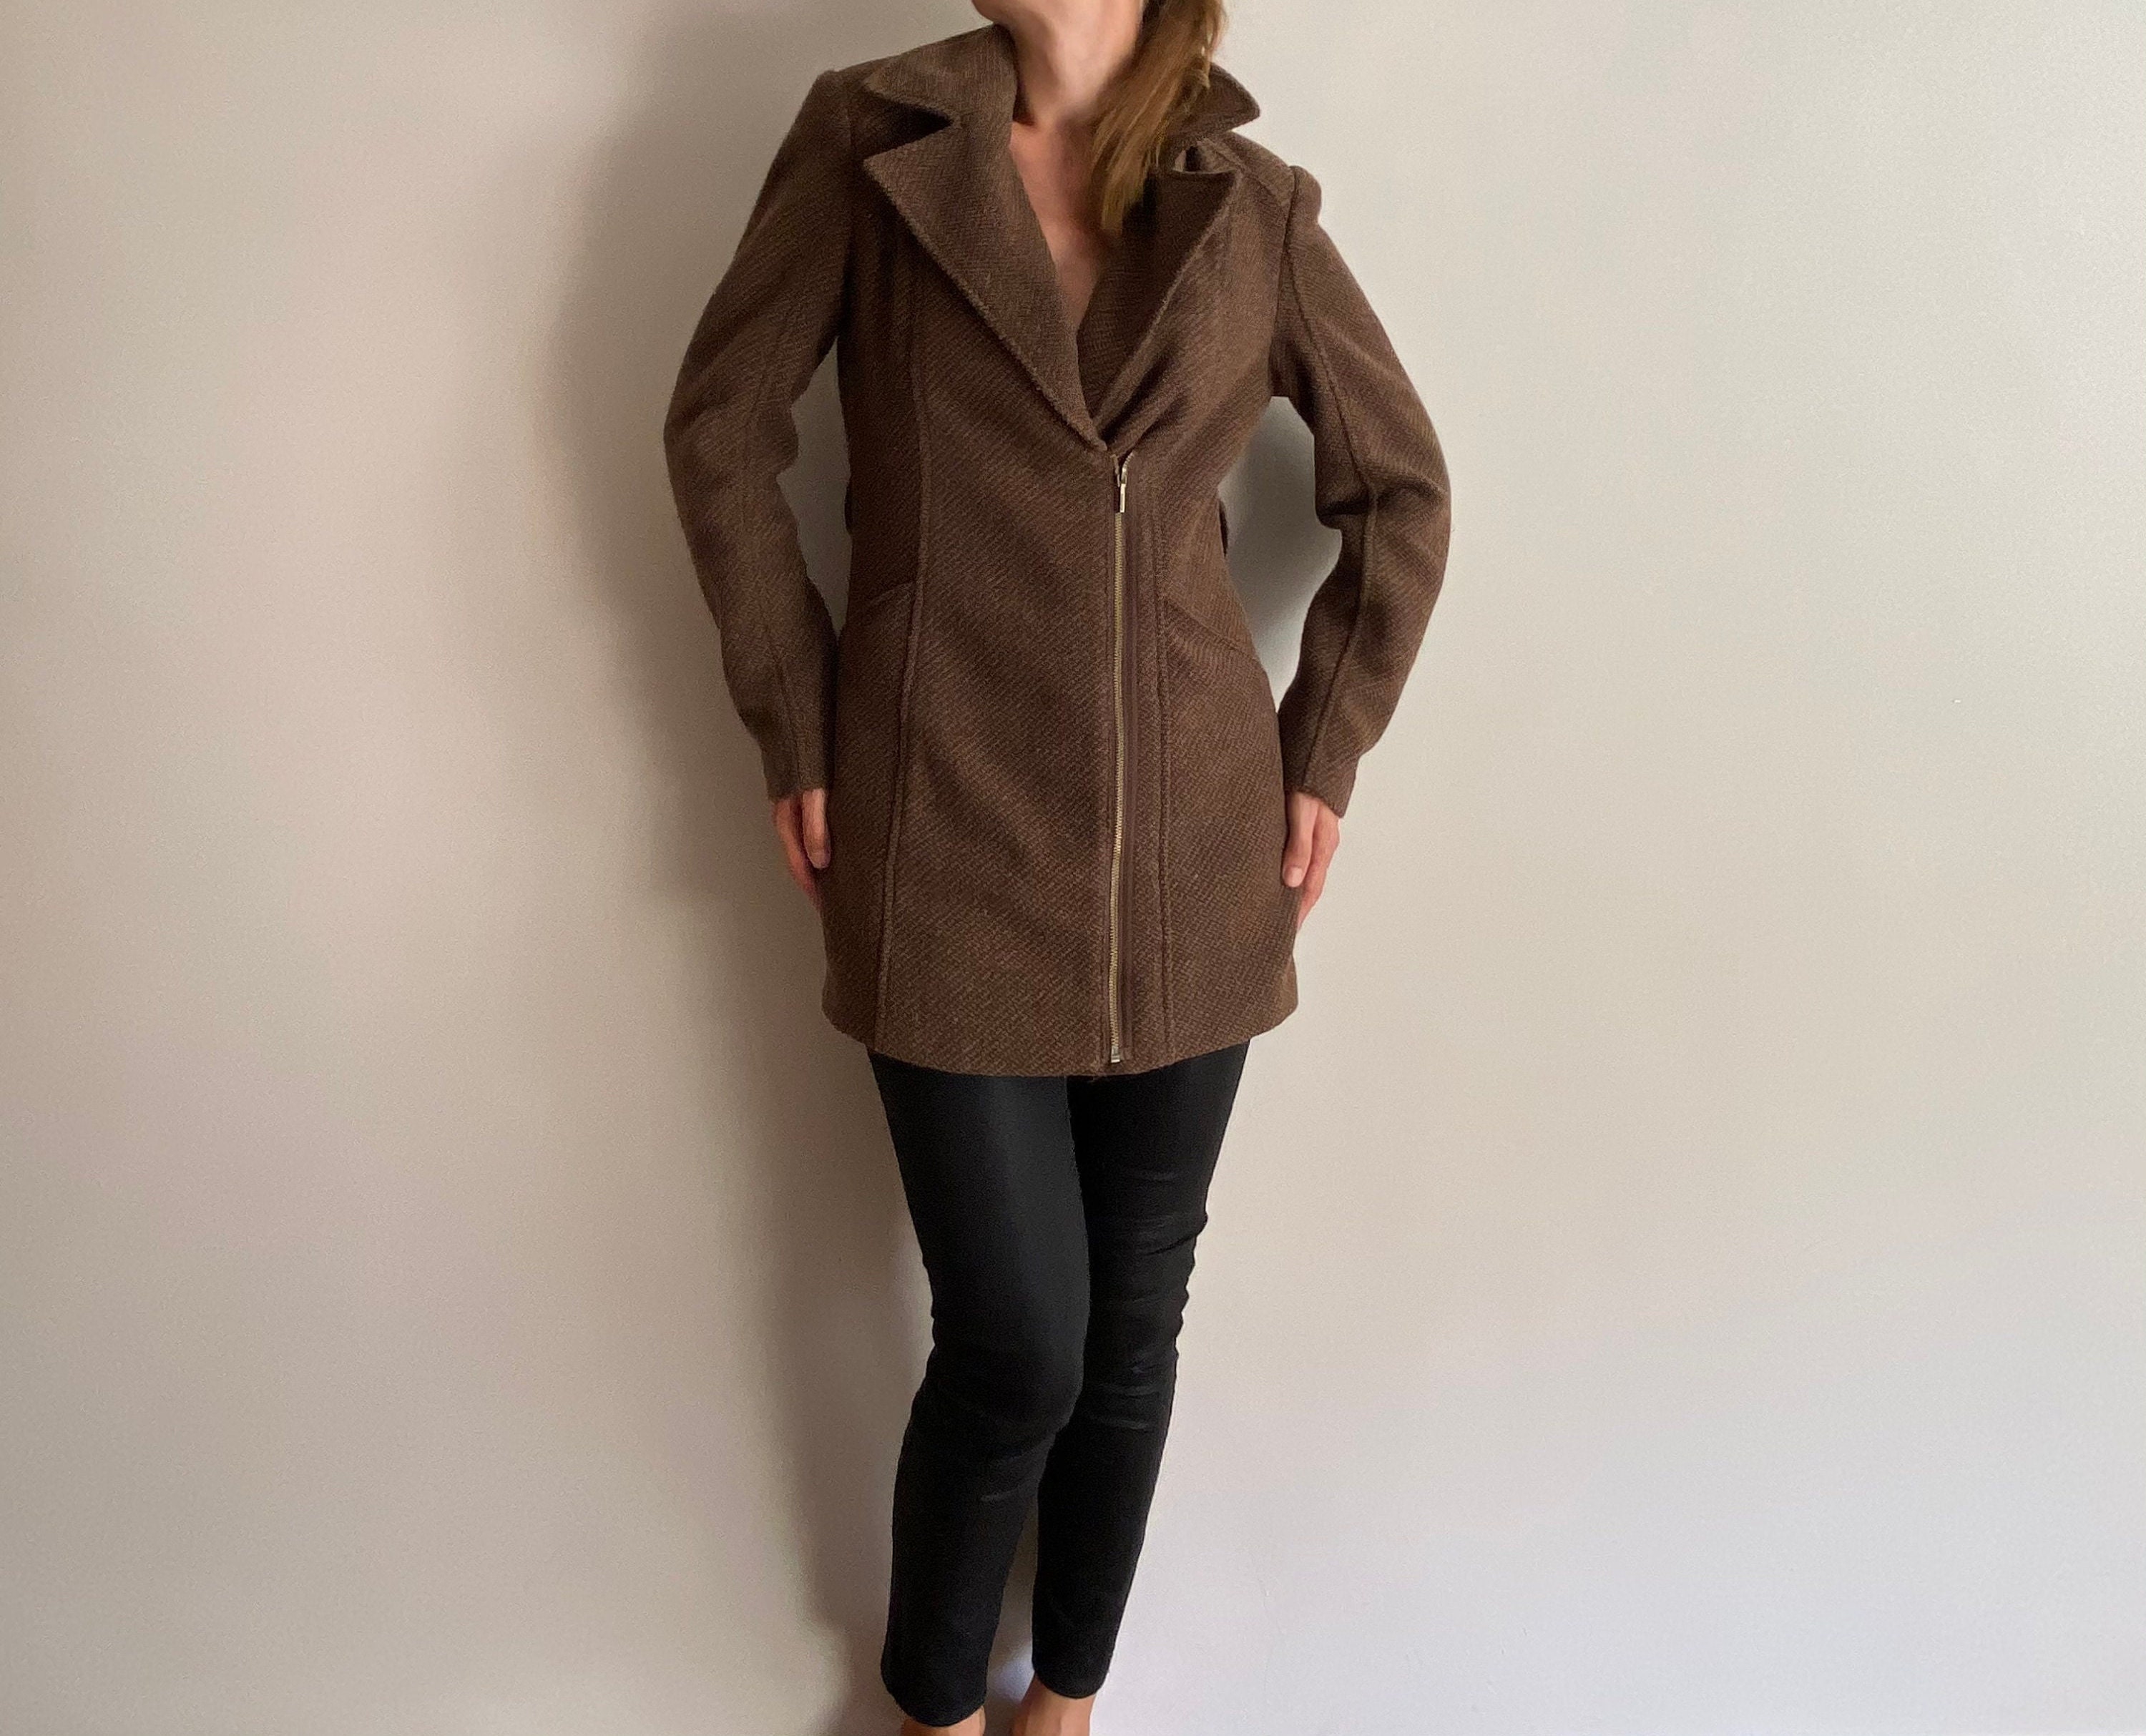 S-M. Vintage Wool Blend Overcoat, Zip Up Coat